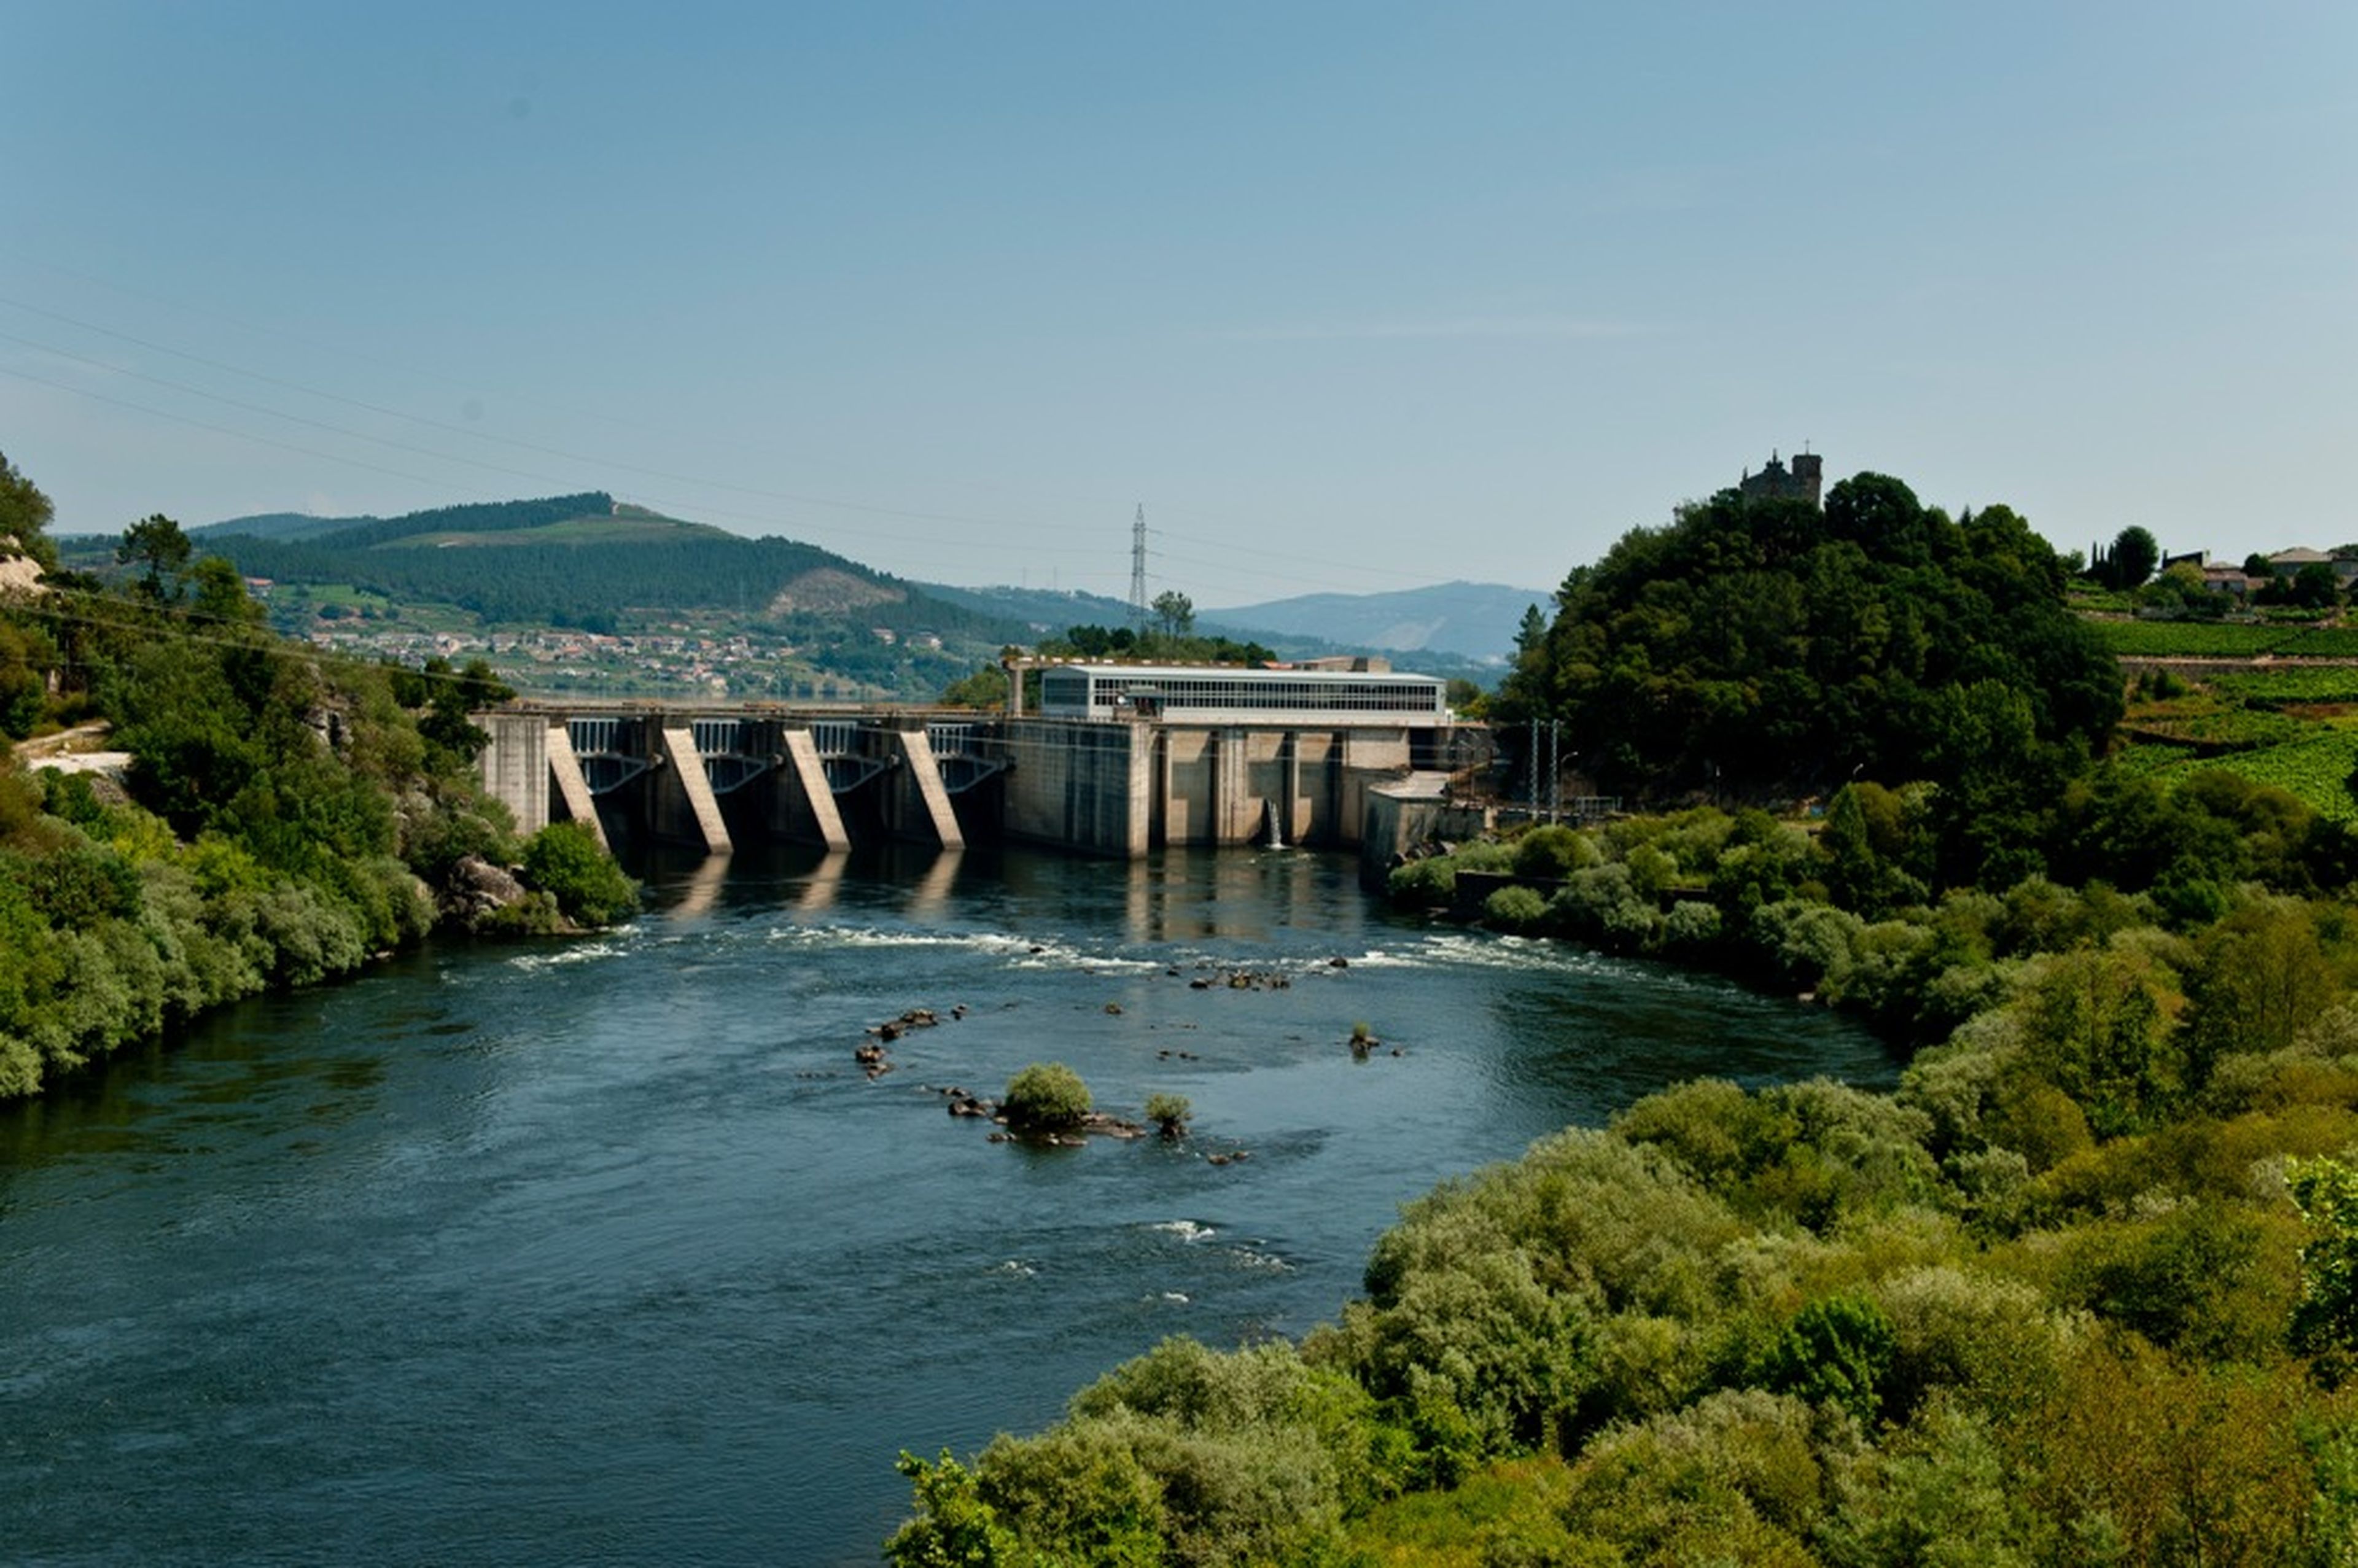 Central hidroeléctrica de Castrelo do Miño de Naturgy